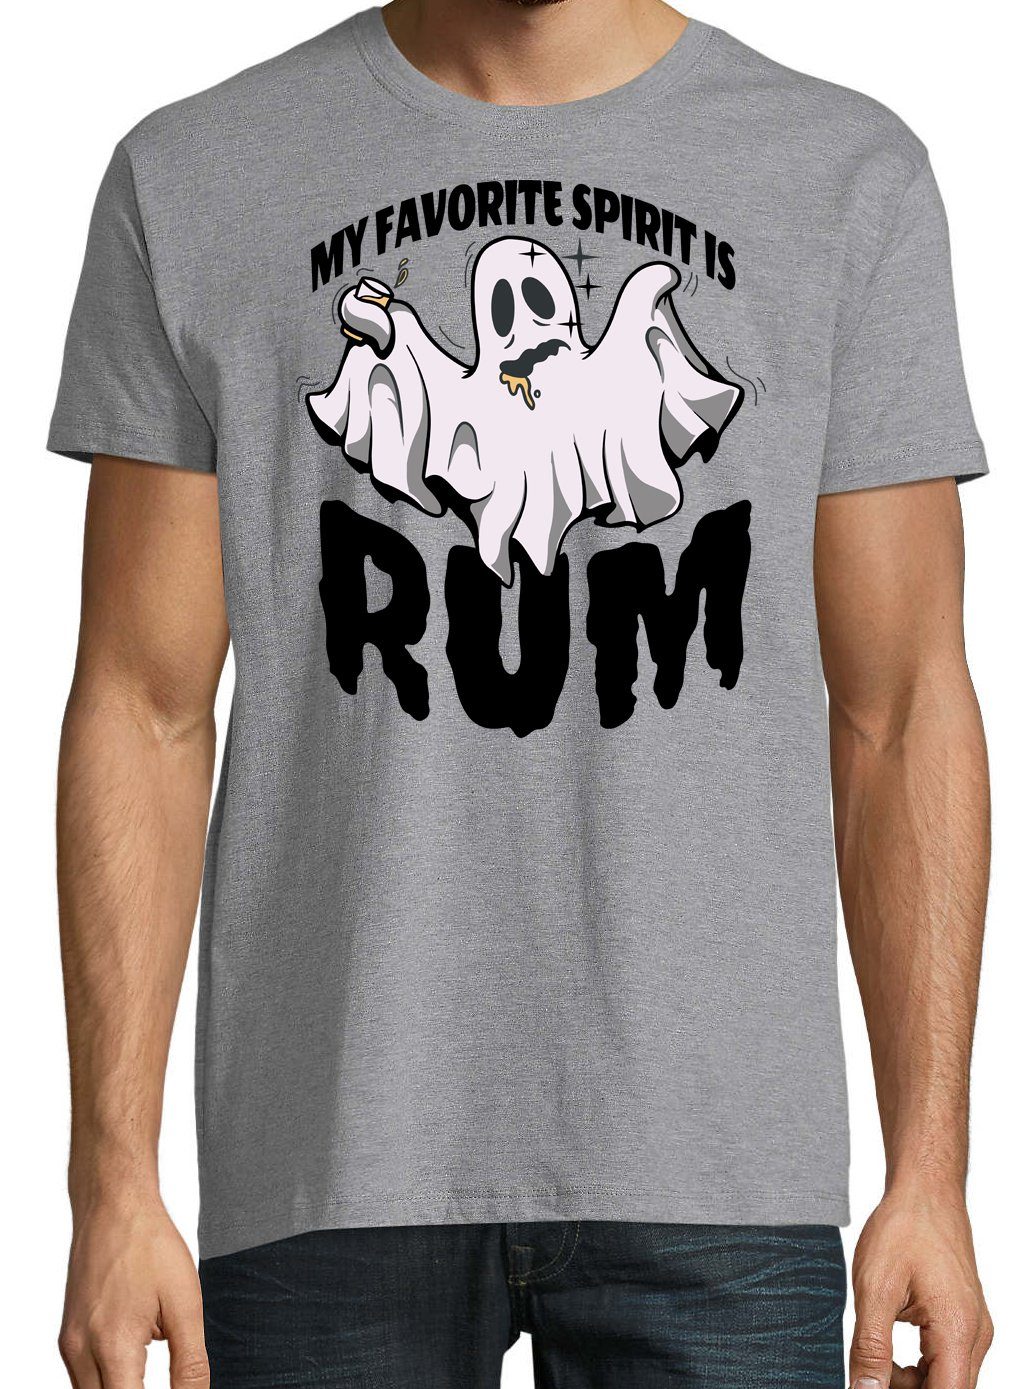 Grau Fun-Look My Shirt favorite Herren is im Designz RUM Spirit T-Shirt Youth